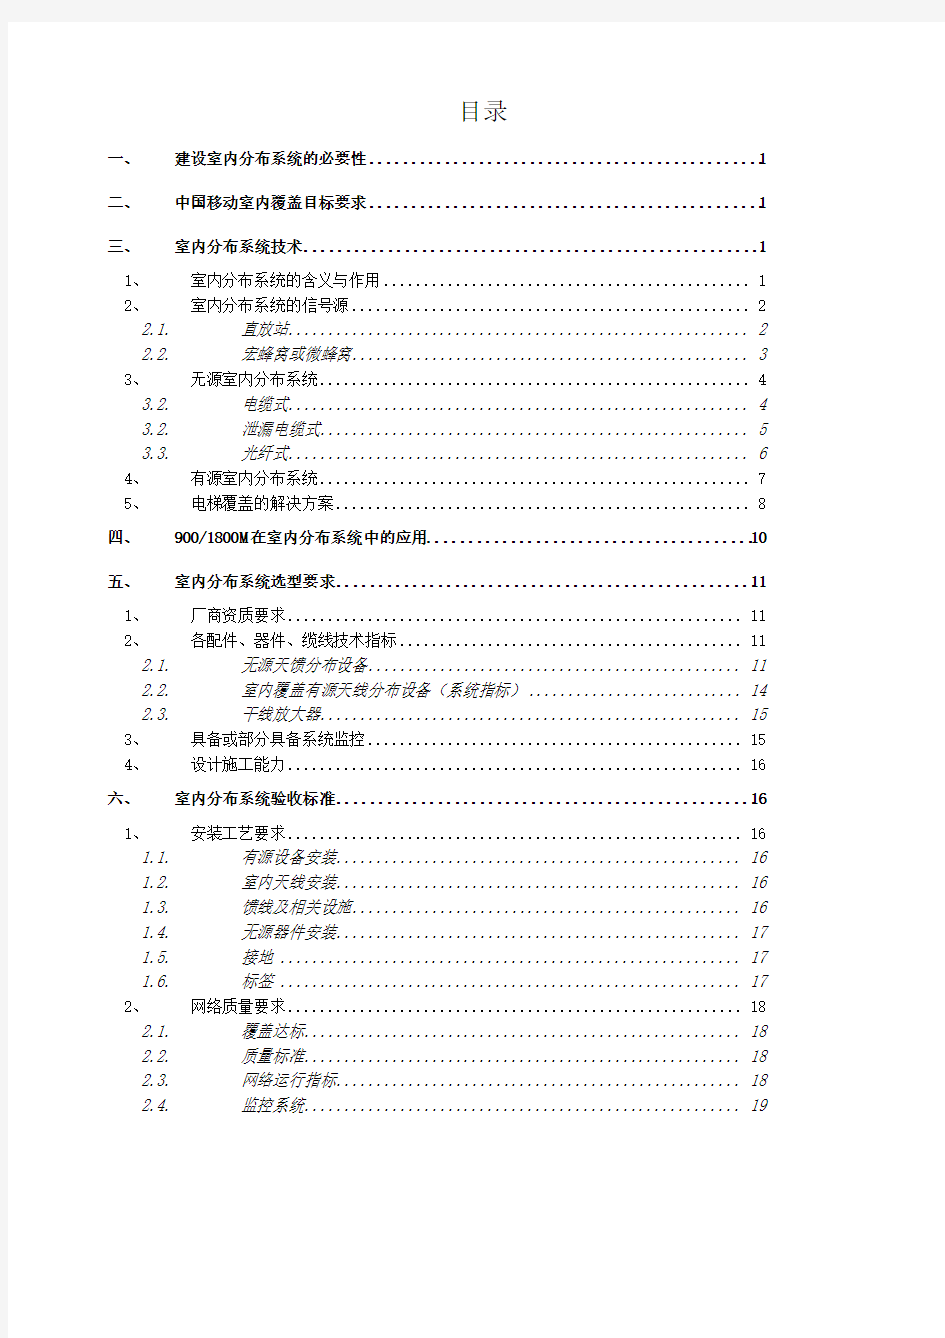 中国移动室内分布系统技术规范